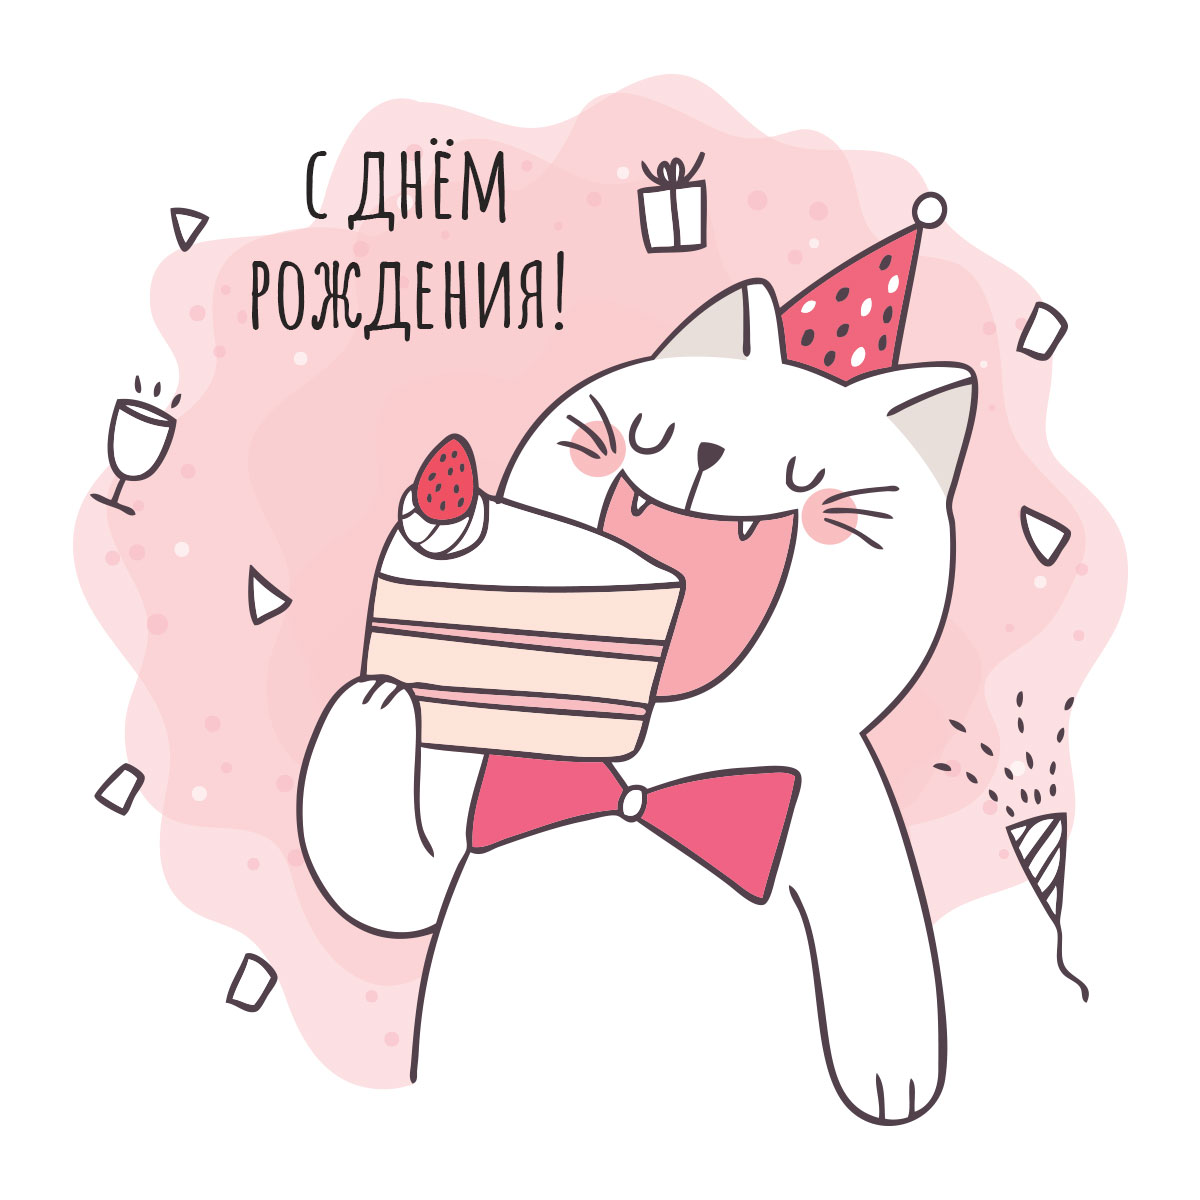 Смешная открытка с днём рождения кот в галстуке - бабочке ест кусок торта.